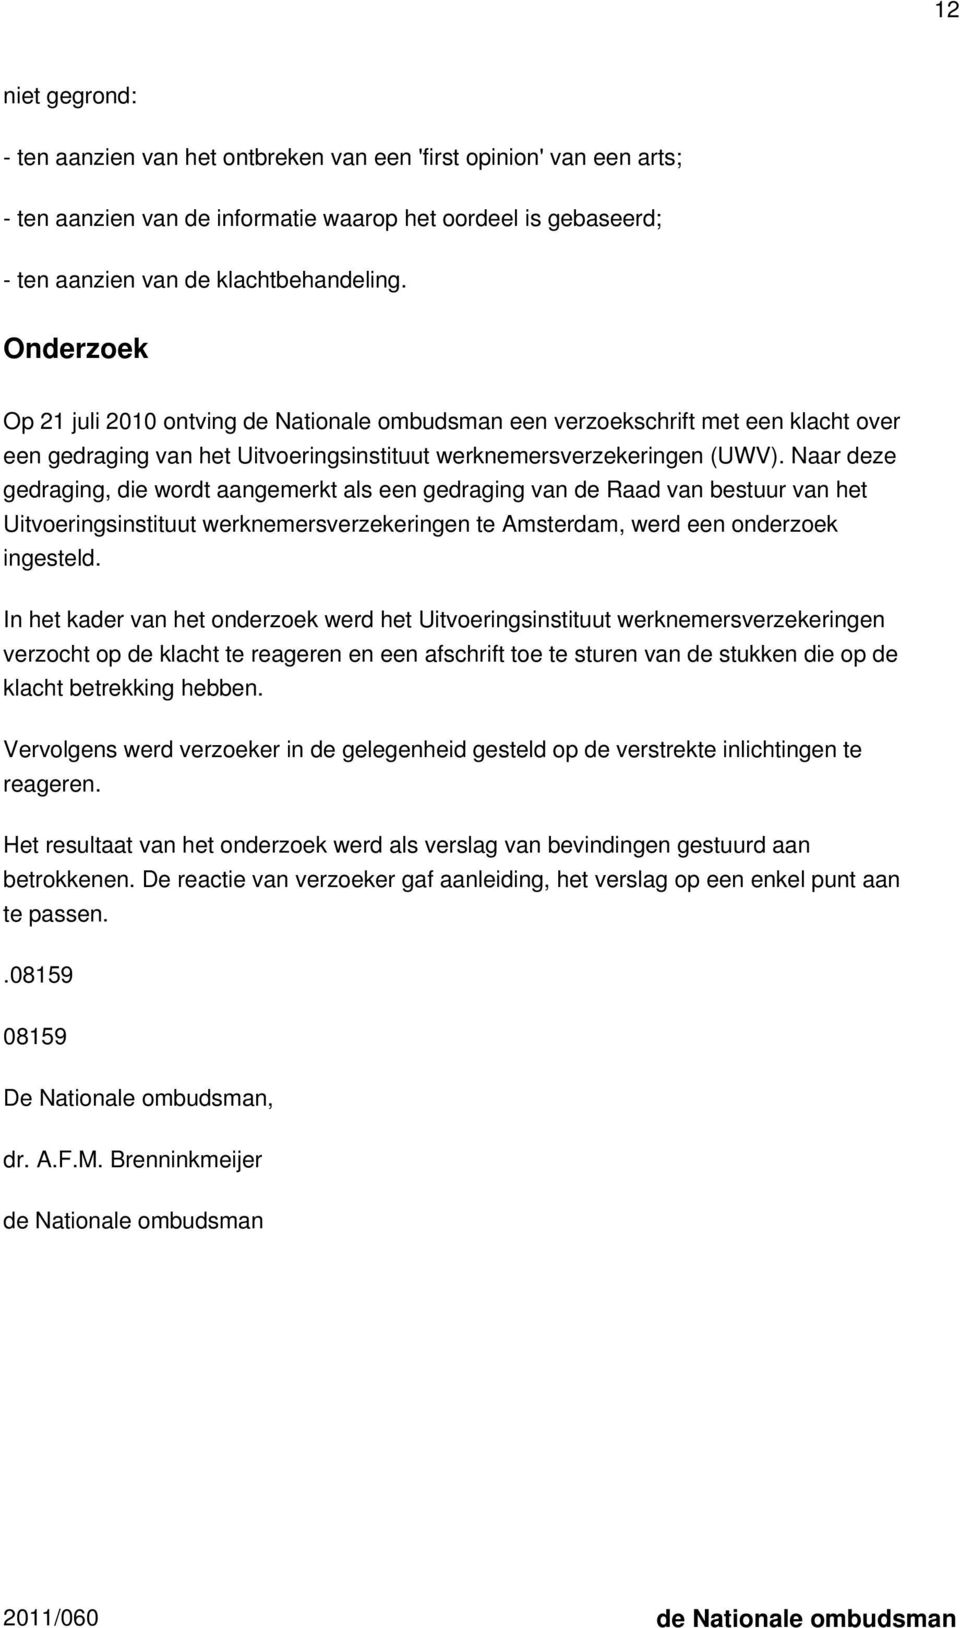 Naar deze gedraging, die wordt aangemerkt als een gedraging van de Raad van bestuur van het Uitvoeringsinstituut werknemersverzekeringen te Amsterdam, werd een onderzoek ingesteld.